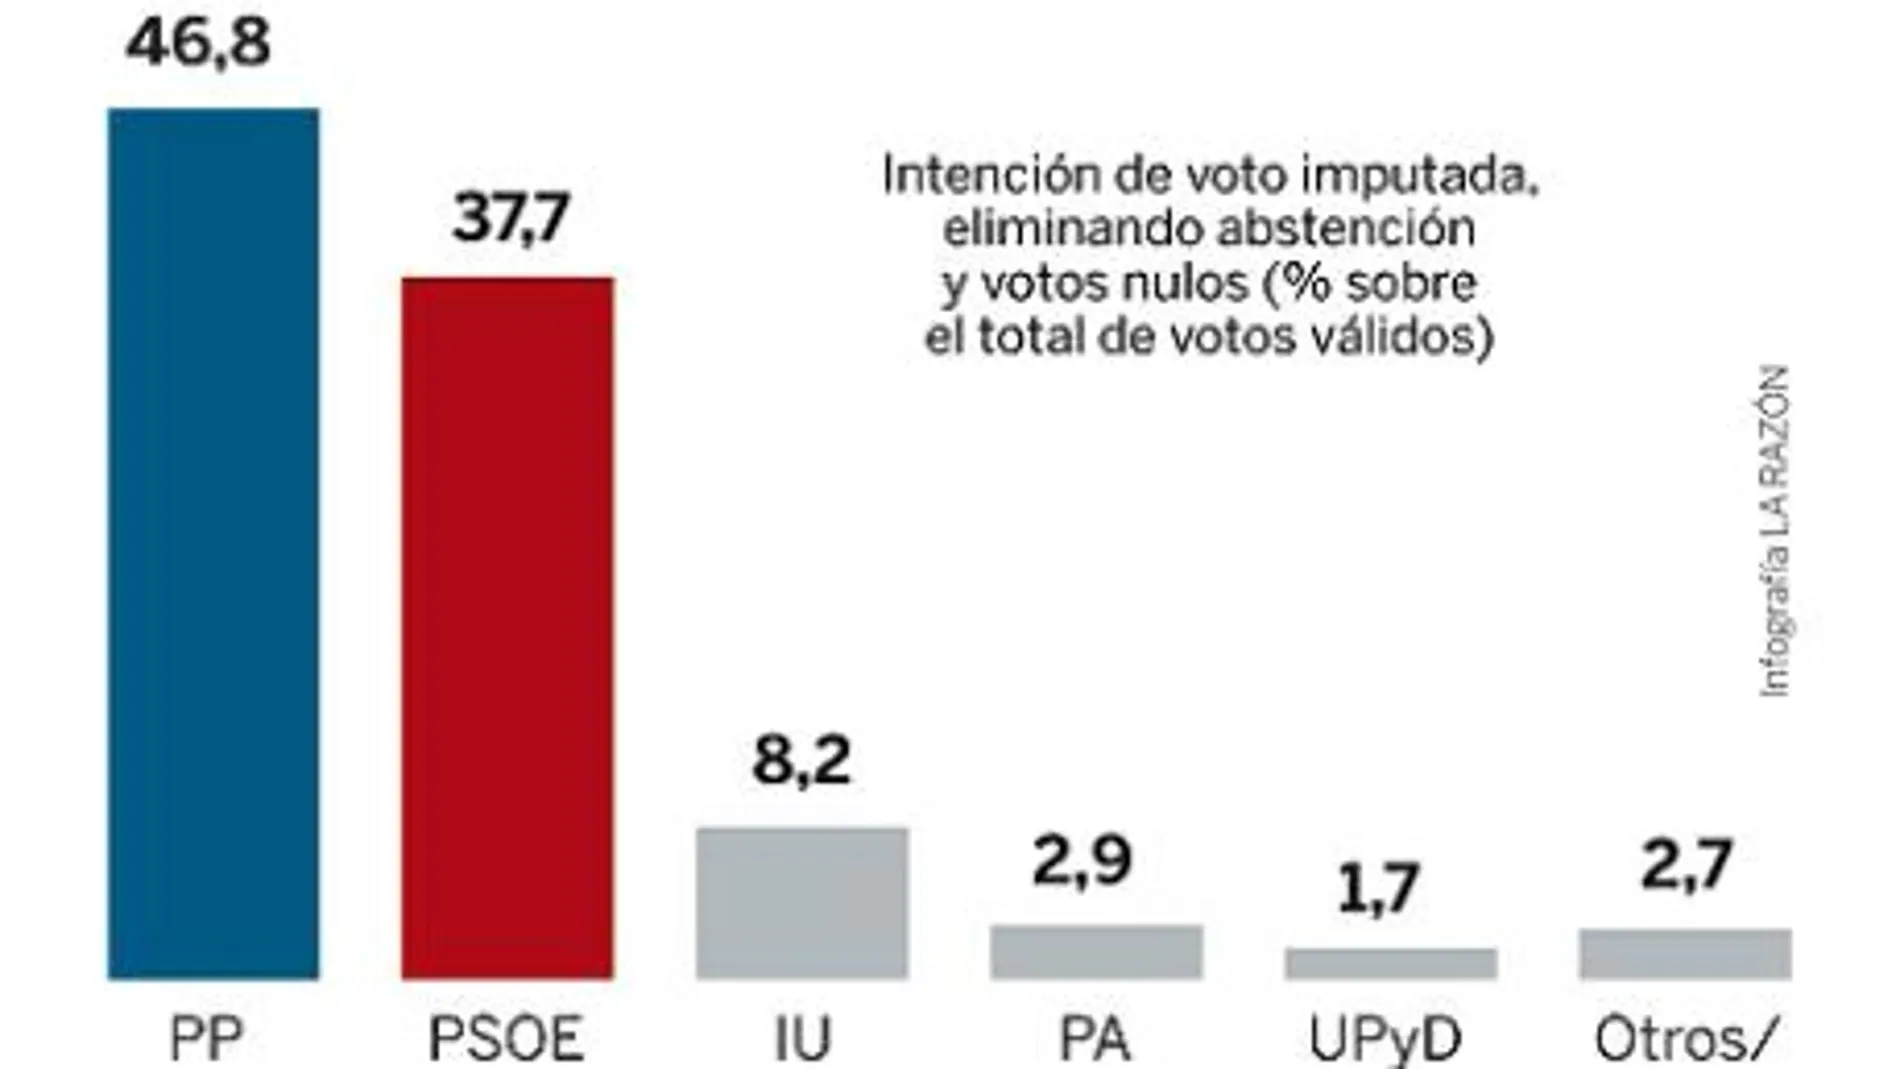 Barómetro de opinión pública de Andalucía